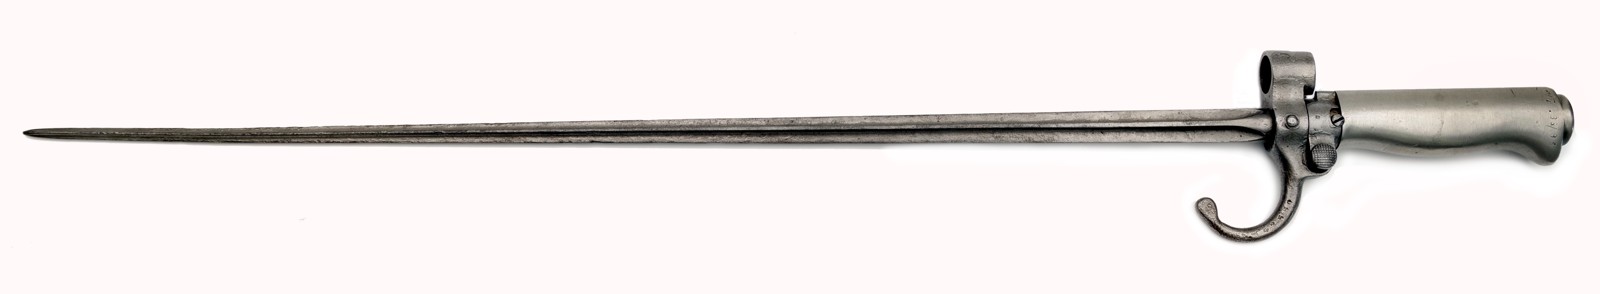 Jehlový bajonet k pušce Lebel (Rozálie) vz. 1866, první model